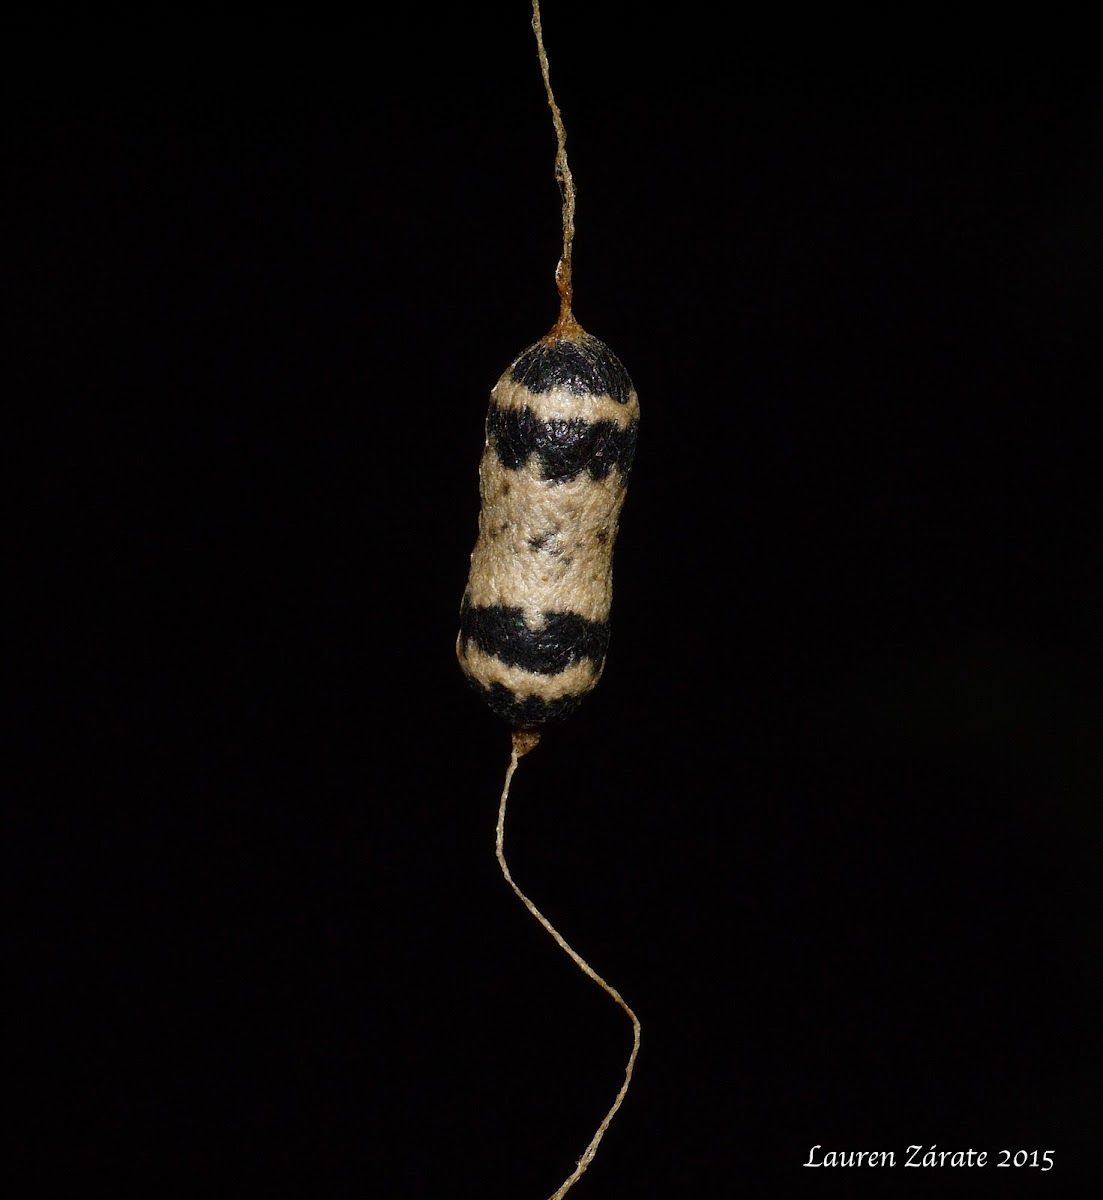 Hanging Ichneumonid Wasp Cocoon & Adult Wasp